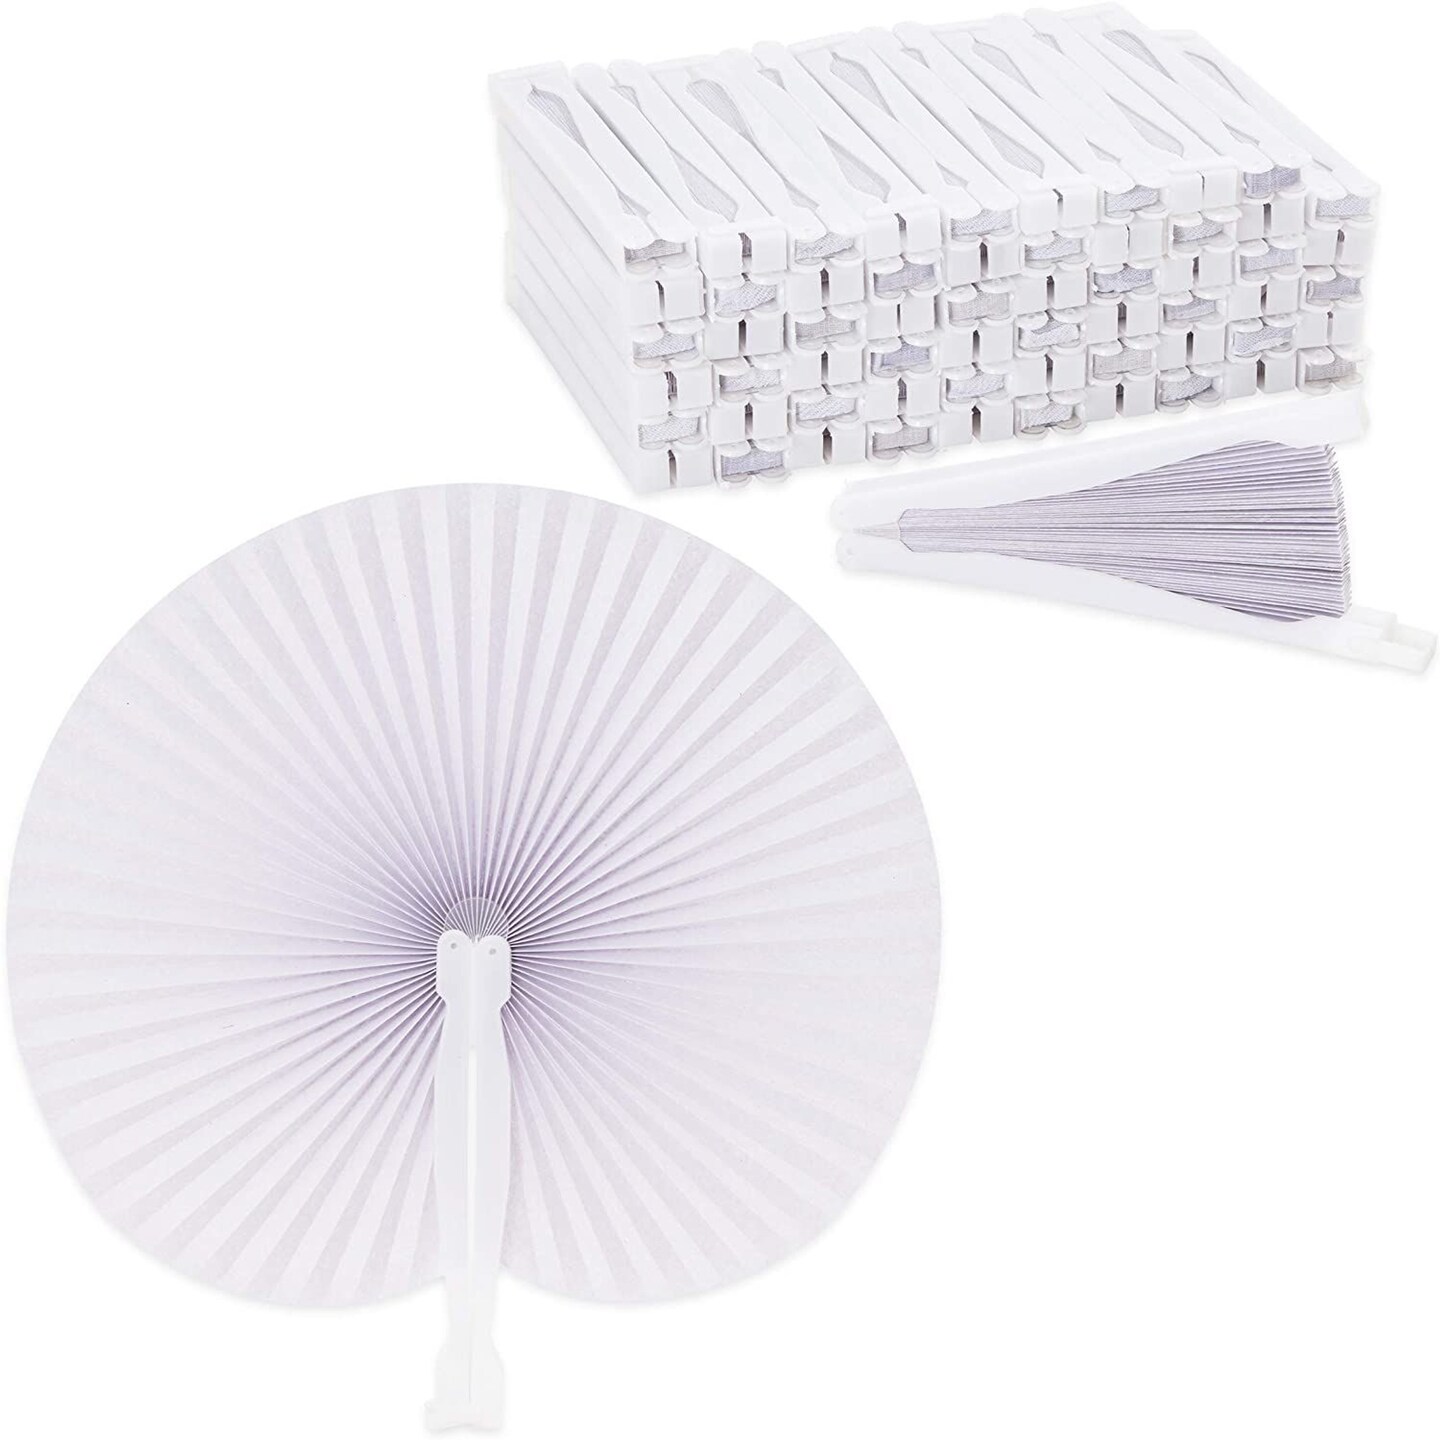  Leehome 60 Pcs White Paper Fans, Folding Handheld Fans